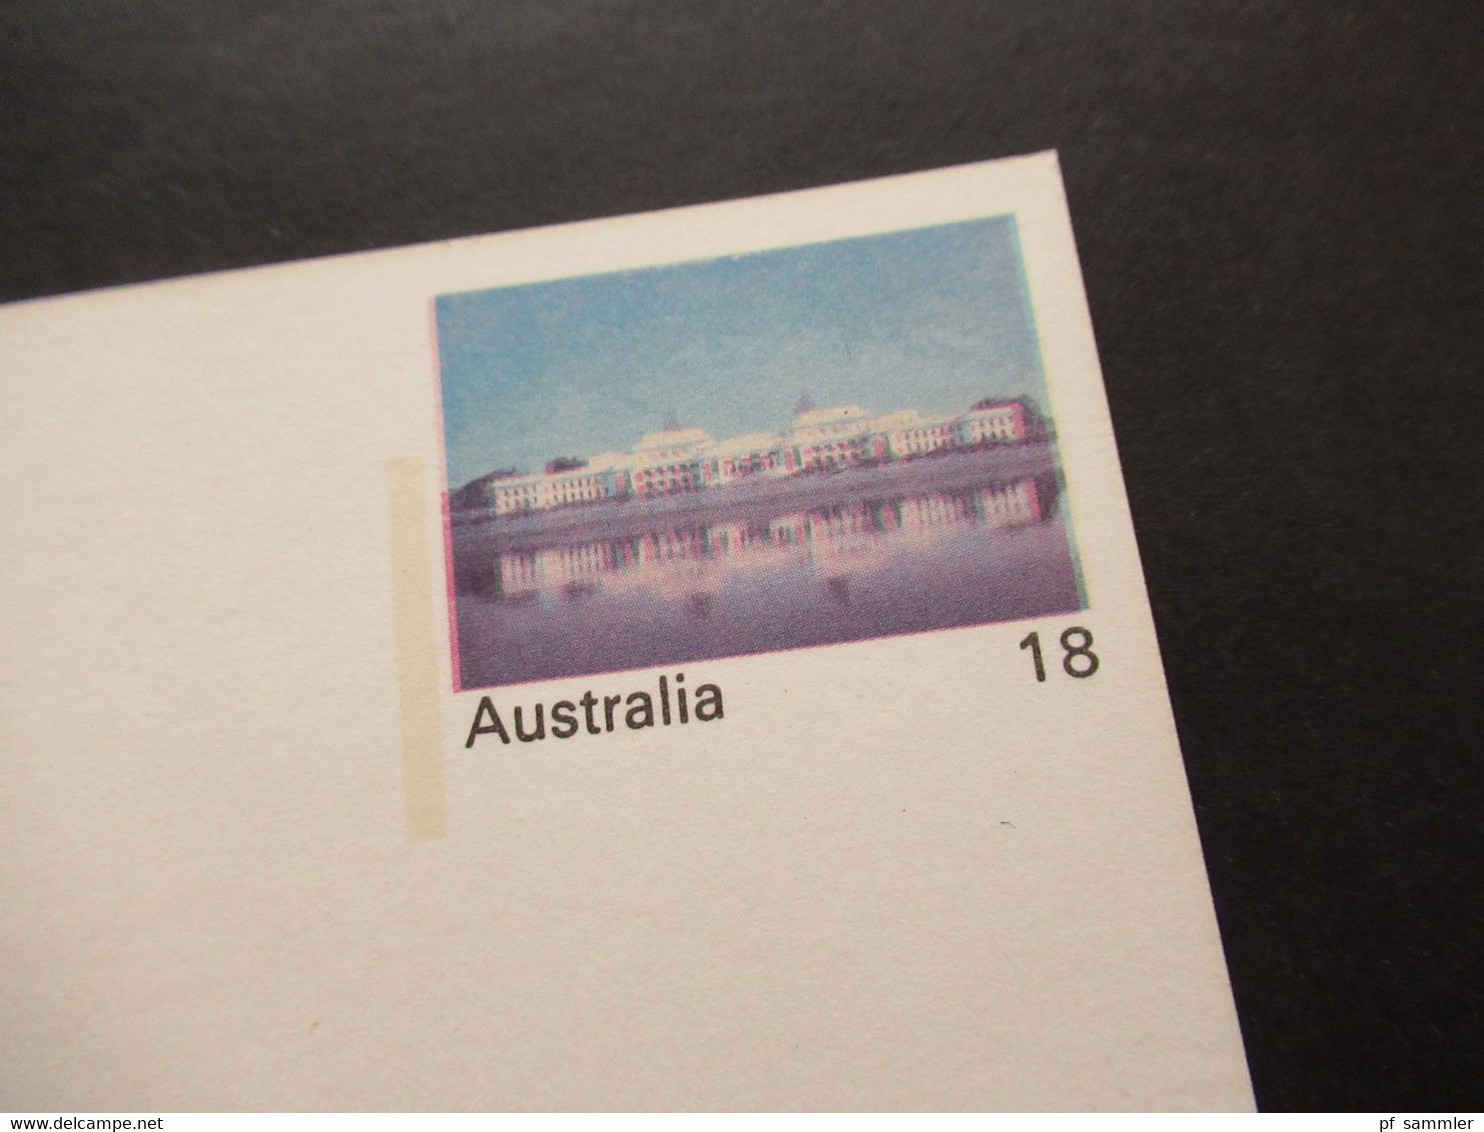 Australien 1976 Ganzsache Mit Druckfehler / Verschobener Druck! Parliament House Vievew Across Lake Burley Griffin - Briefe U. Dokumente